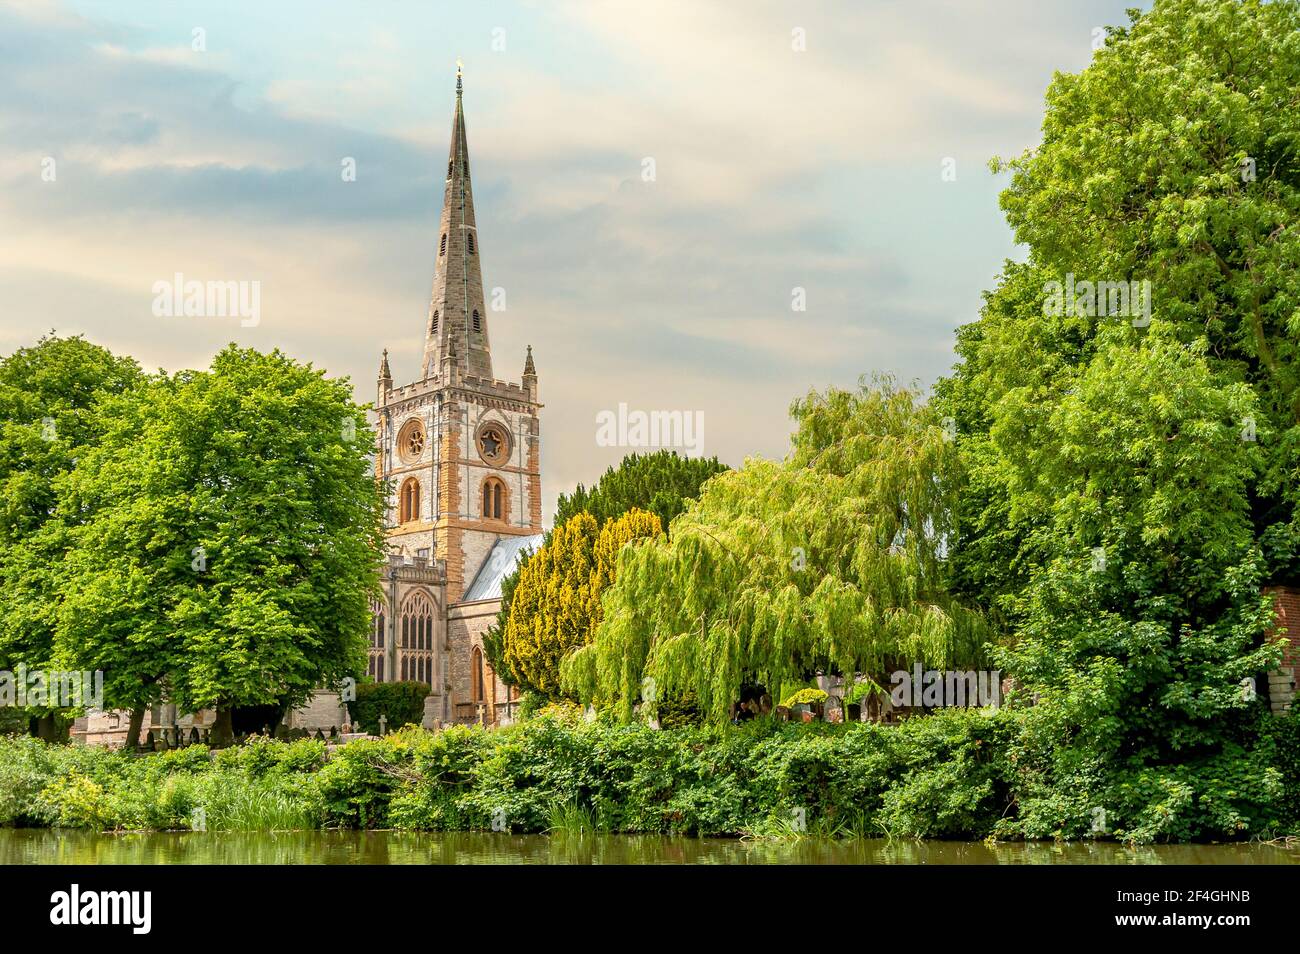 L'église de la Sainte et indivisible Trinité, Stratford-upon-Avon, Warwickshire, Angleterre Banque D'Images